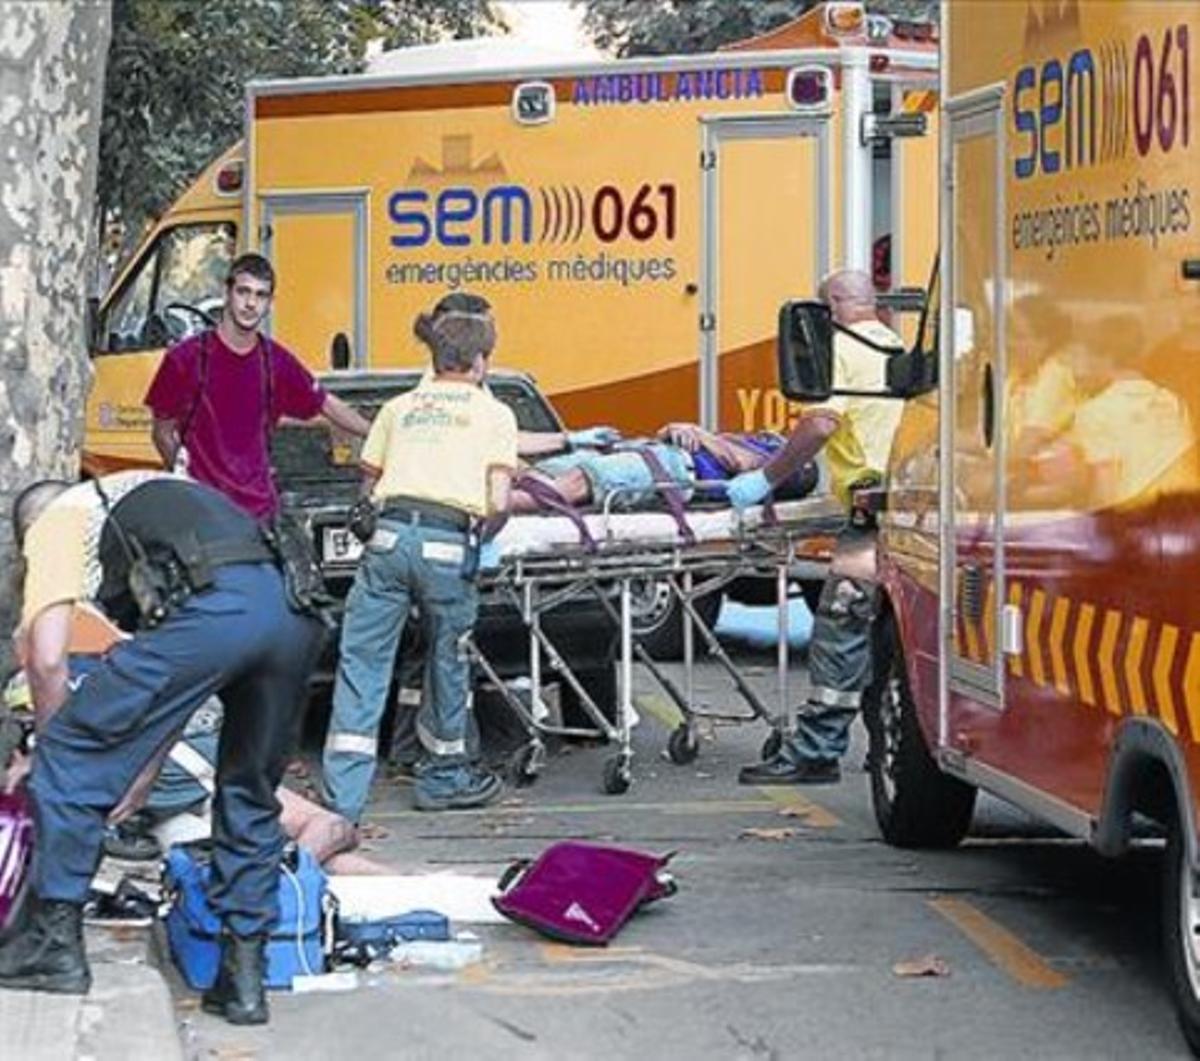 Diverses ambulàncies van a un accident de trànsit a Barcelona.